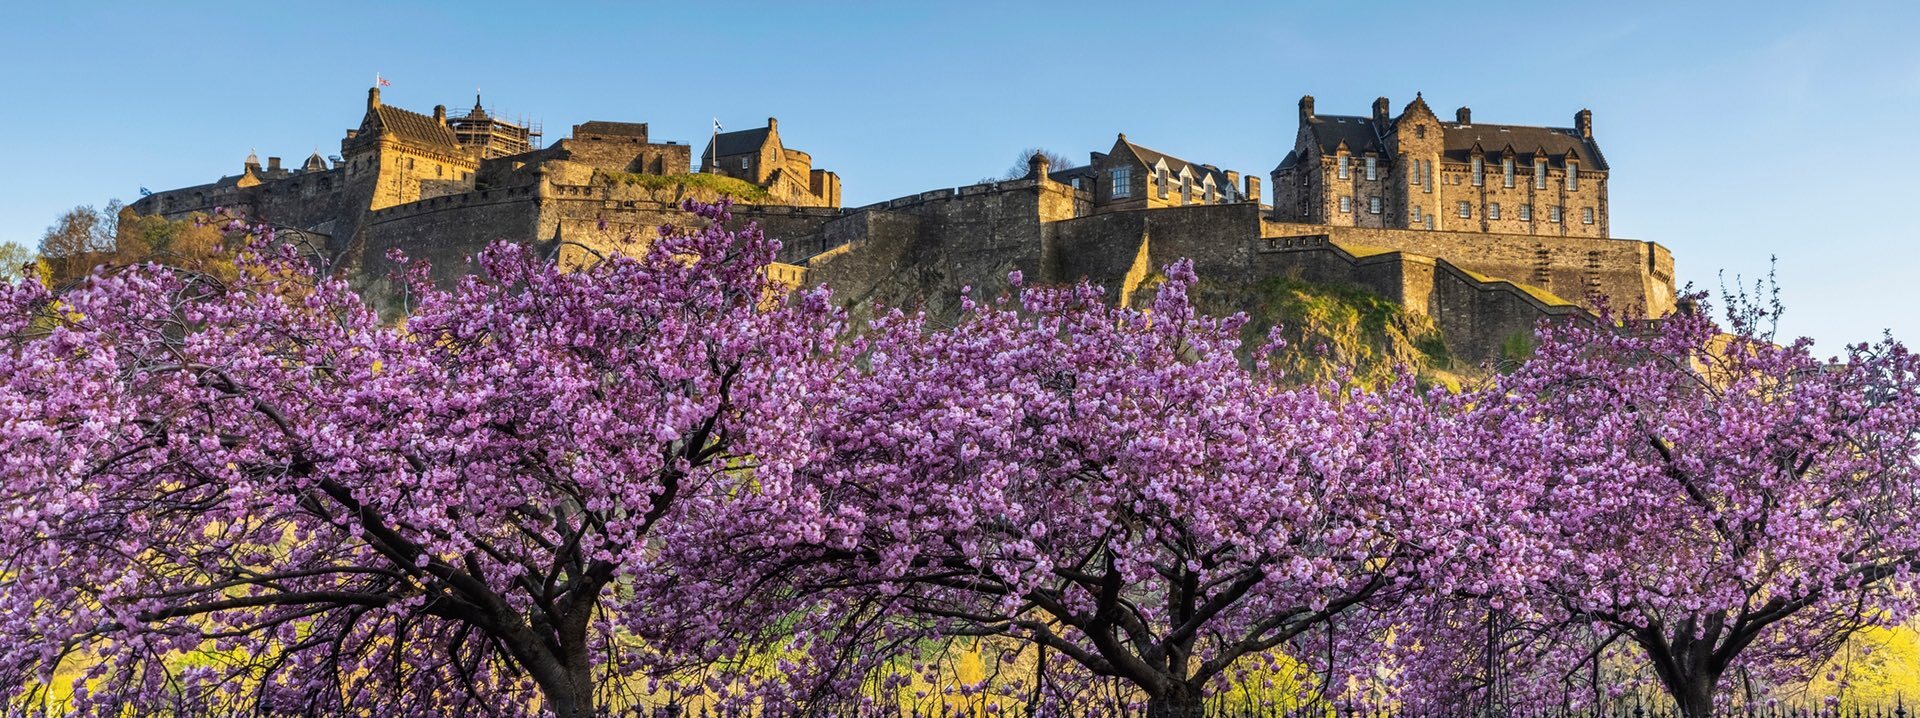 Blick auf Edinburgh Castle hinter blühenden Kirschbäumen.